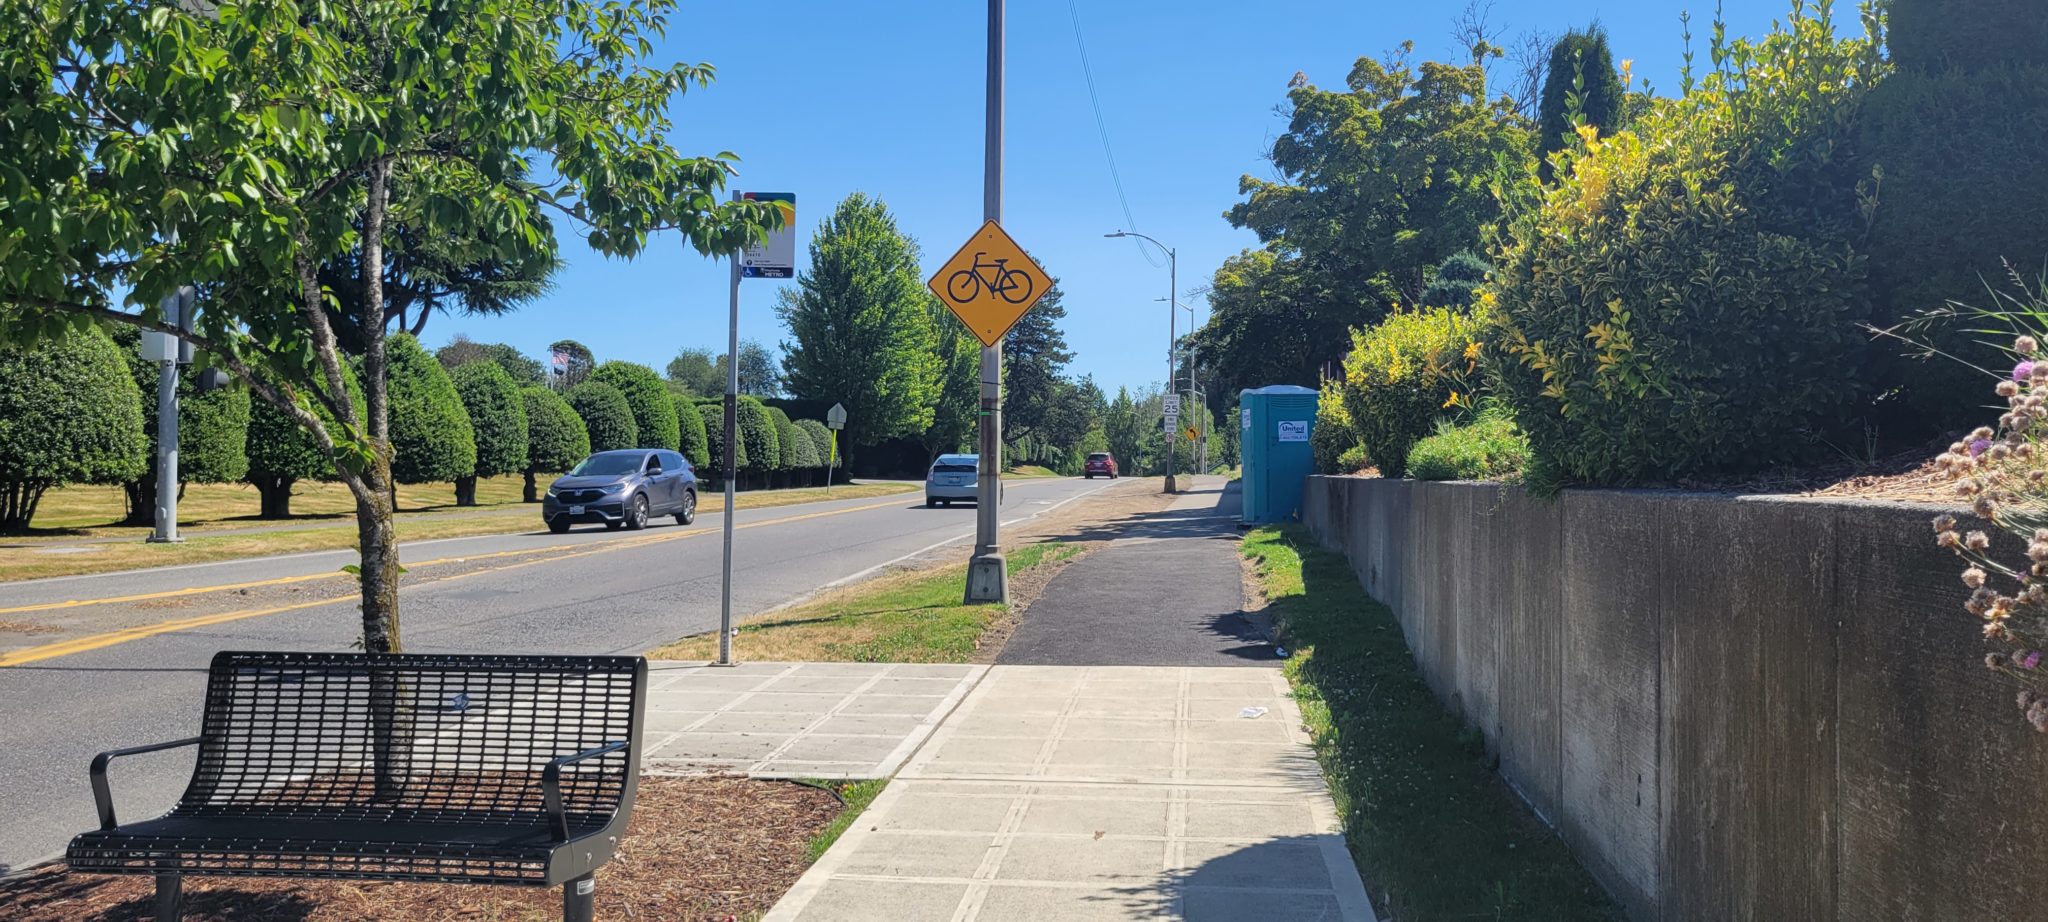 New sidewalk in West Seattle.